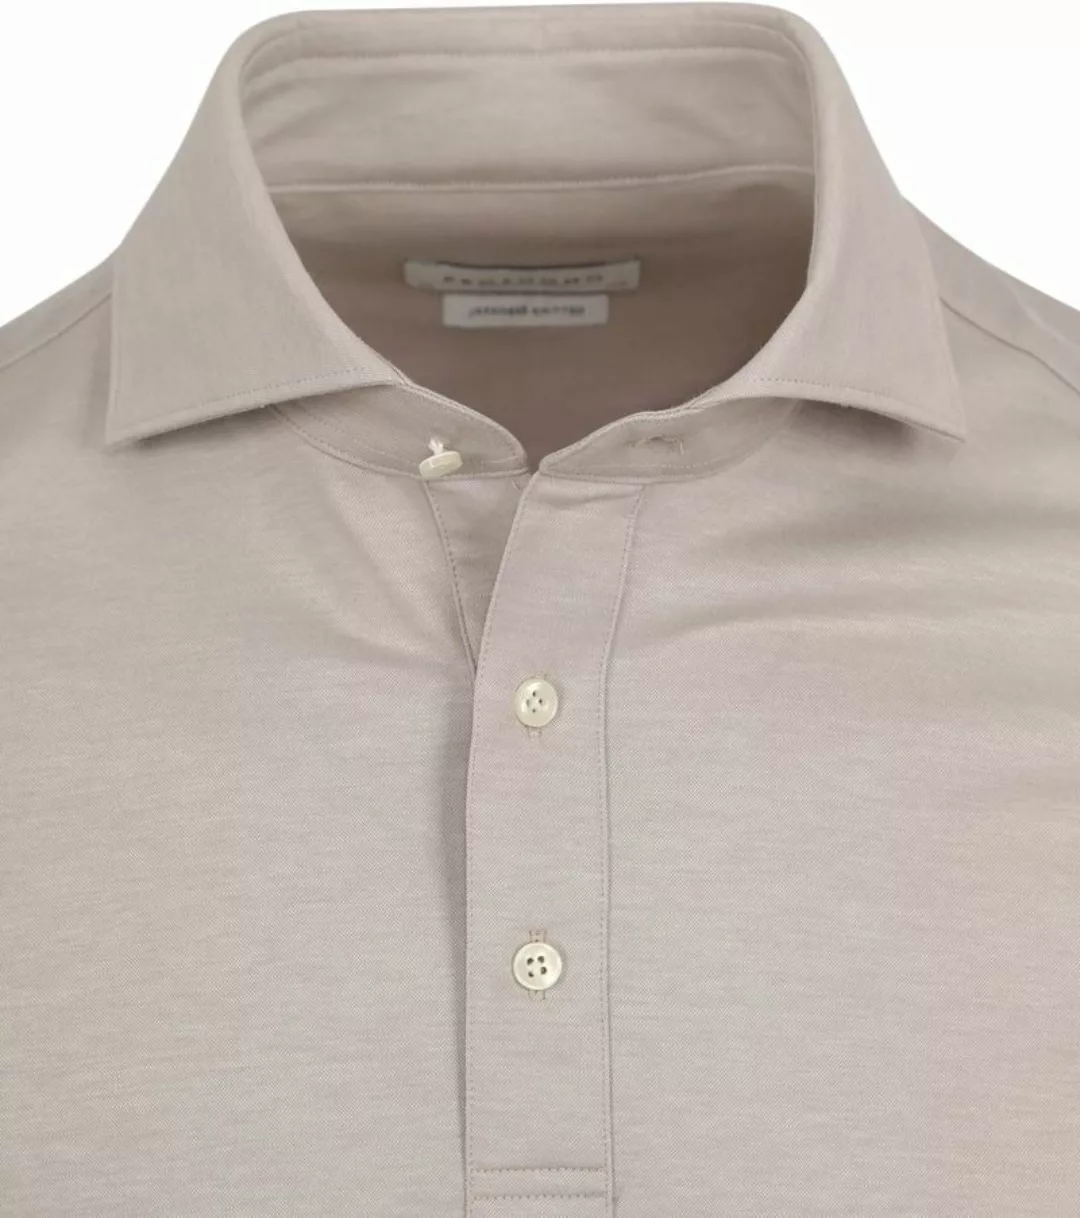 Profuomo Camiche Poloshirt Beige - Größe 40 günstig online kaufen